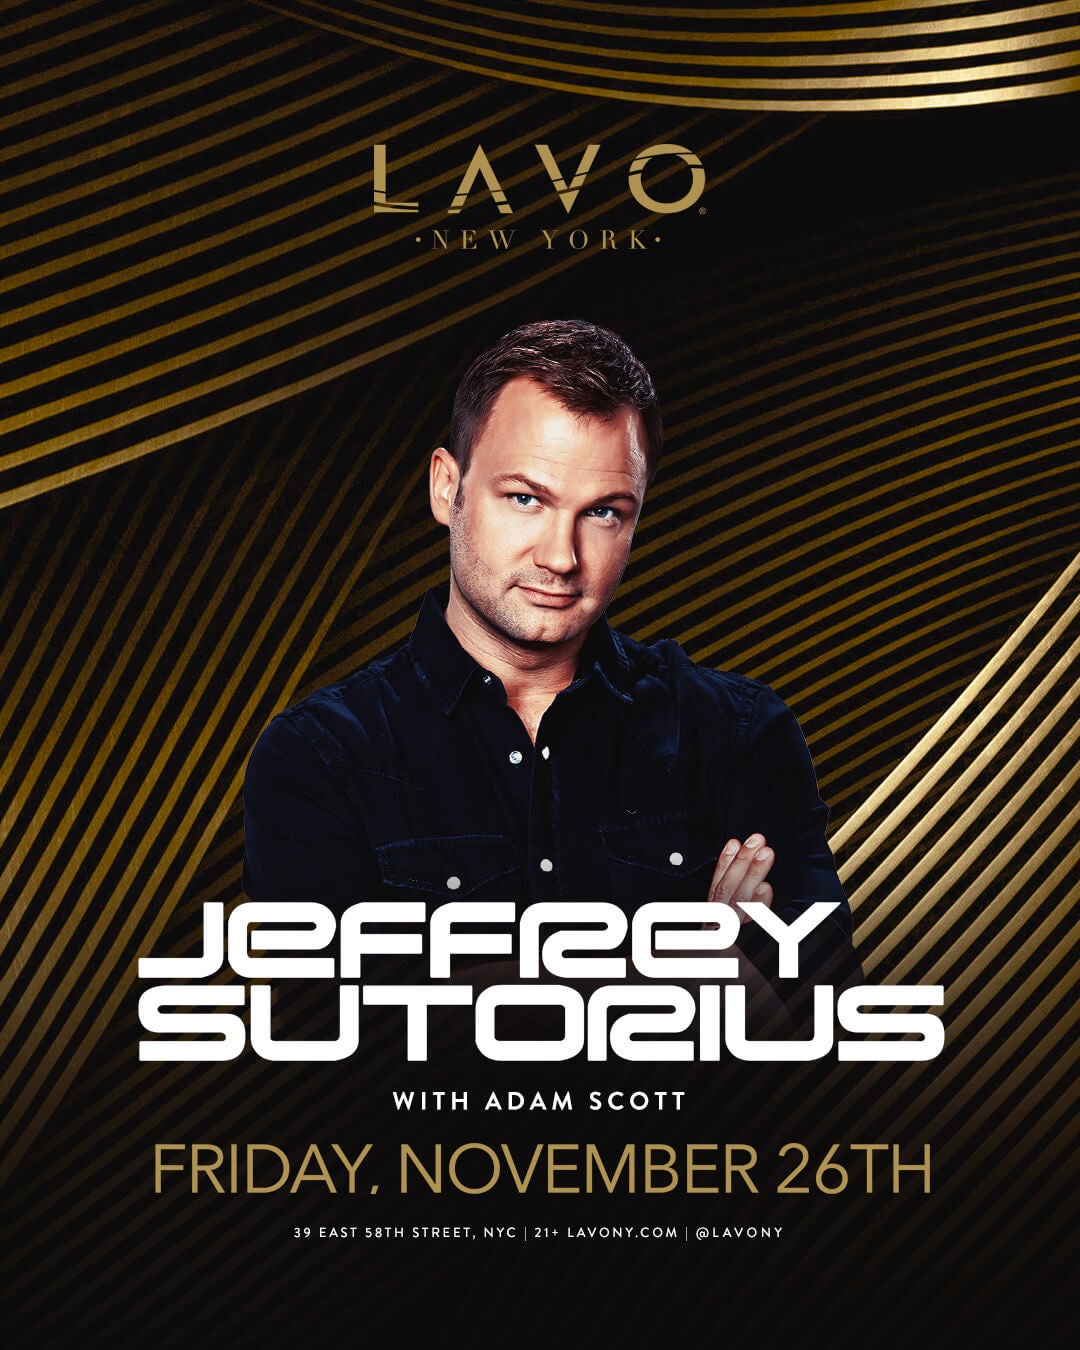 11/26/21 Jeffrey Sutorius – LAVO Nightclub New York